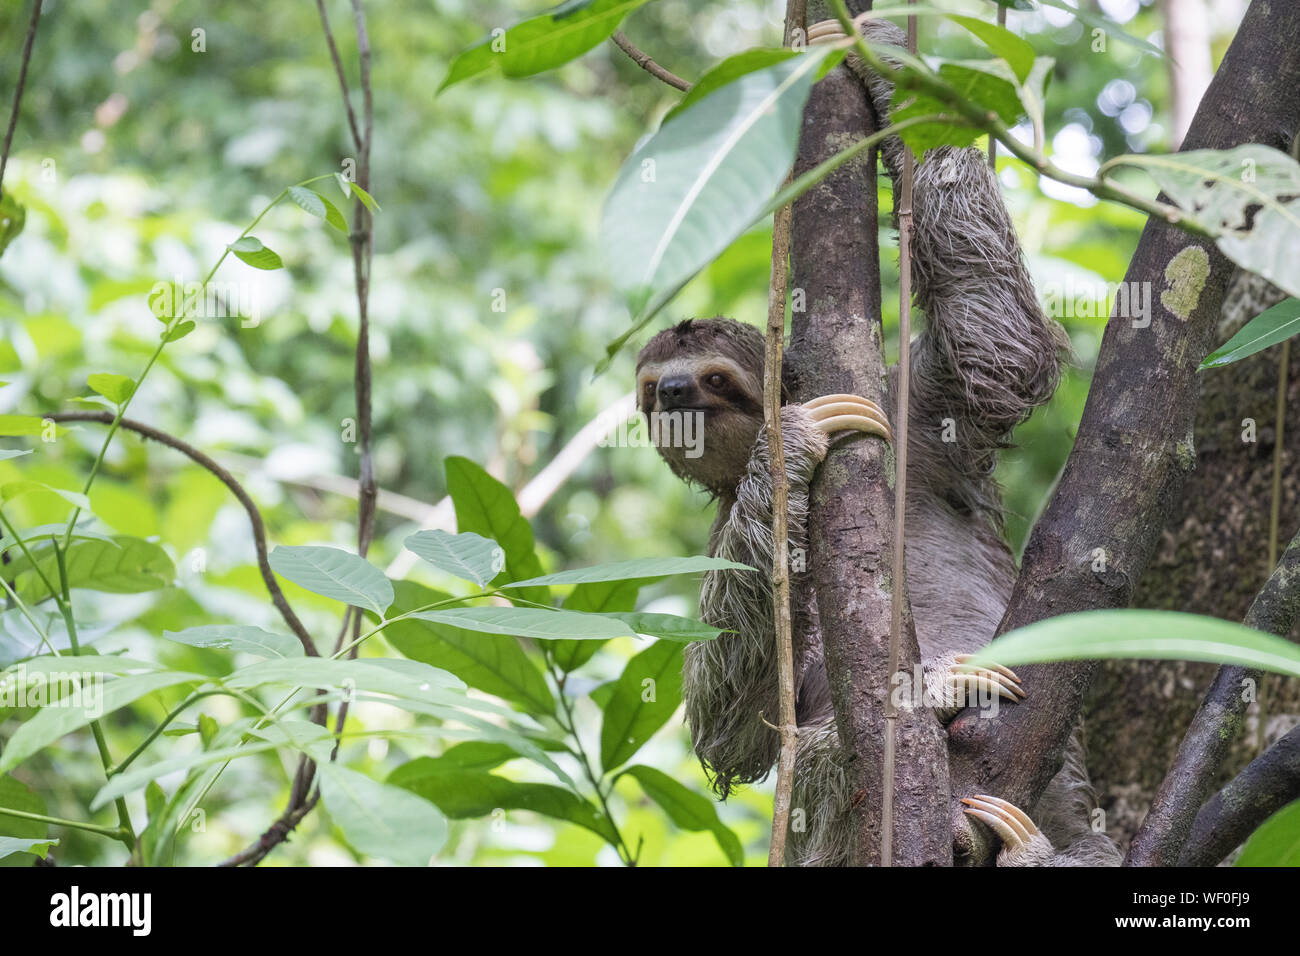 Macho de garganta marrón de tres dedos (Bradypus variegatus) perezoso en árbol, Parque Nacional Manuel Antonio, Costa Rica Foto de stock